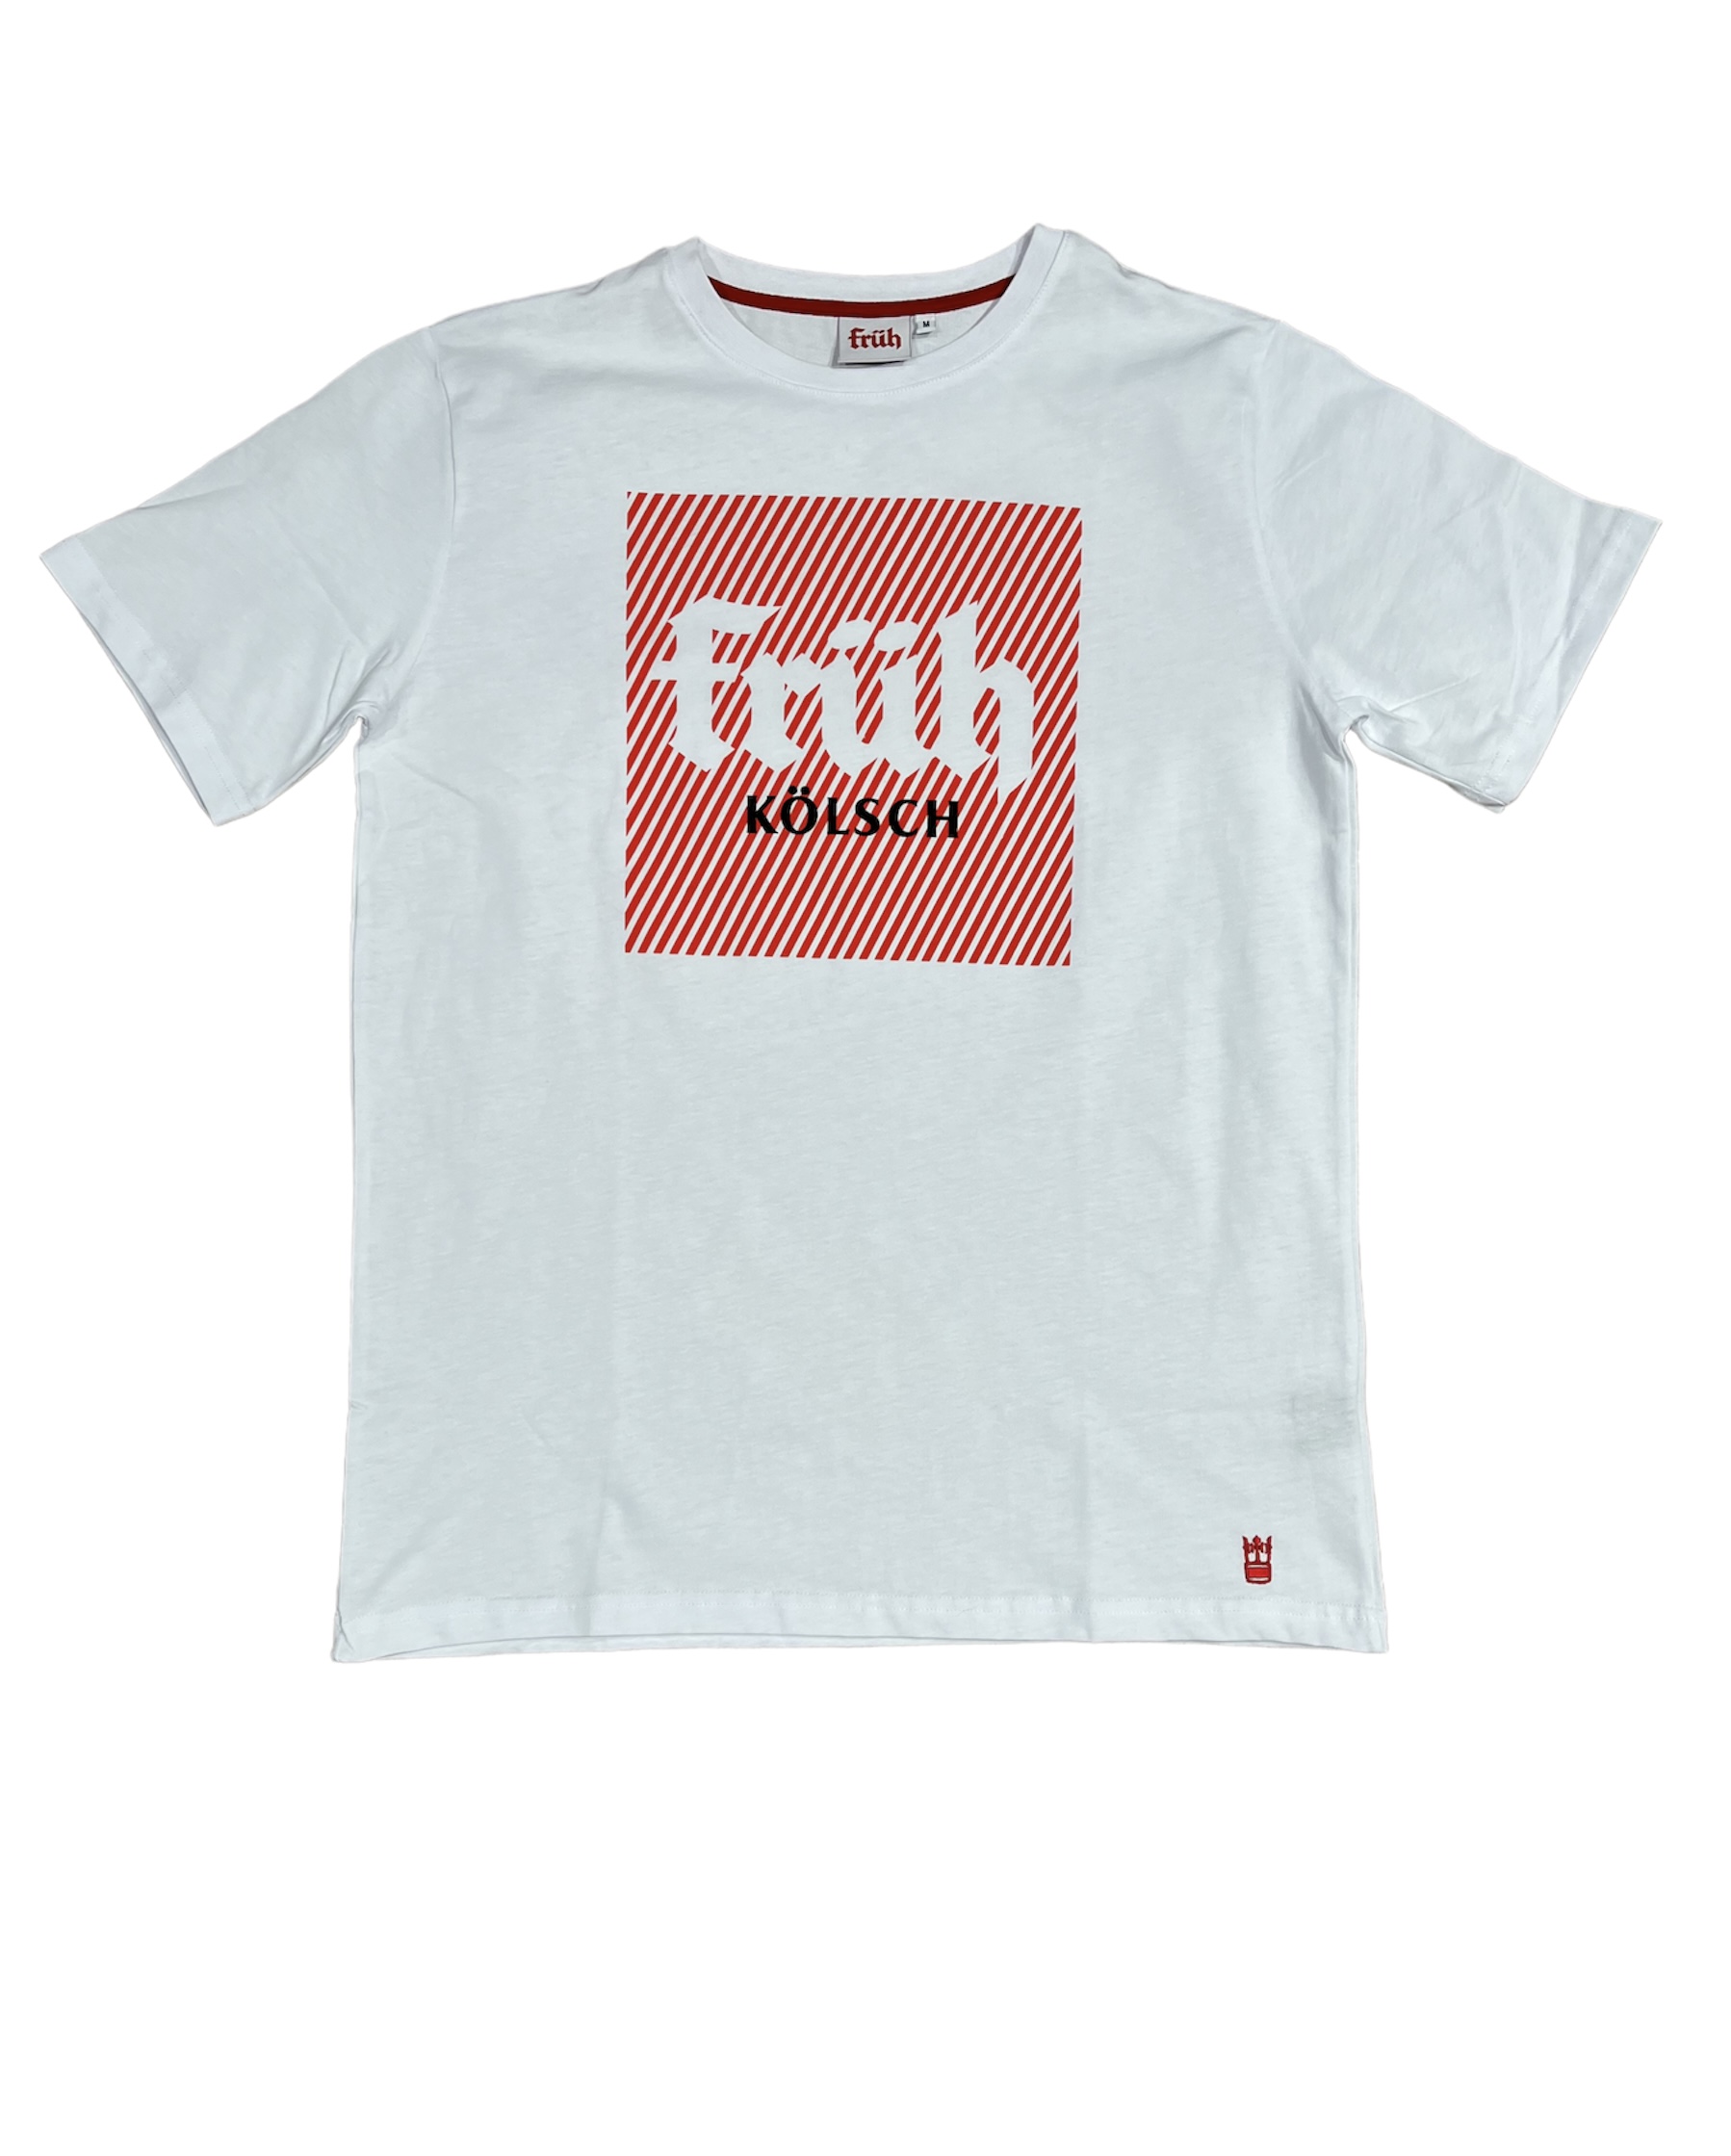 Früh Shirt weiss mit Früh Quadrat Logo M